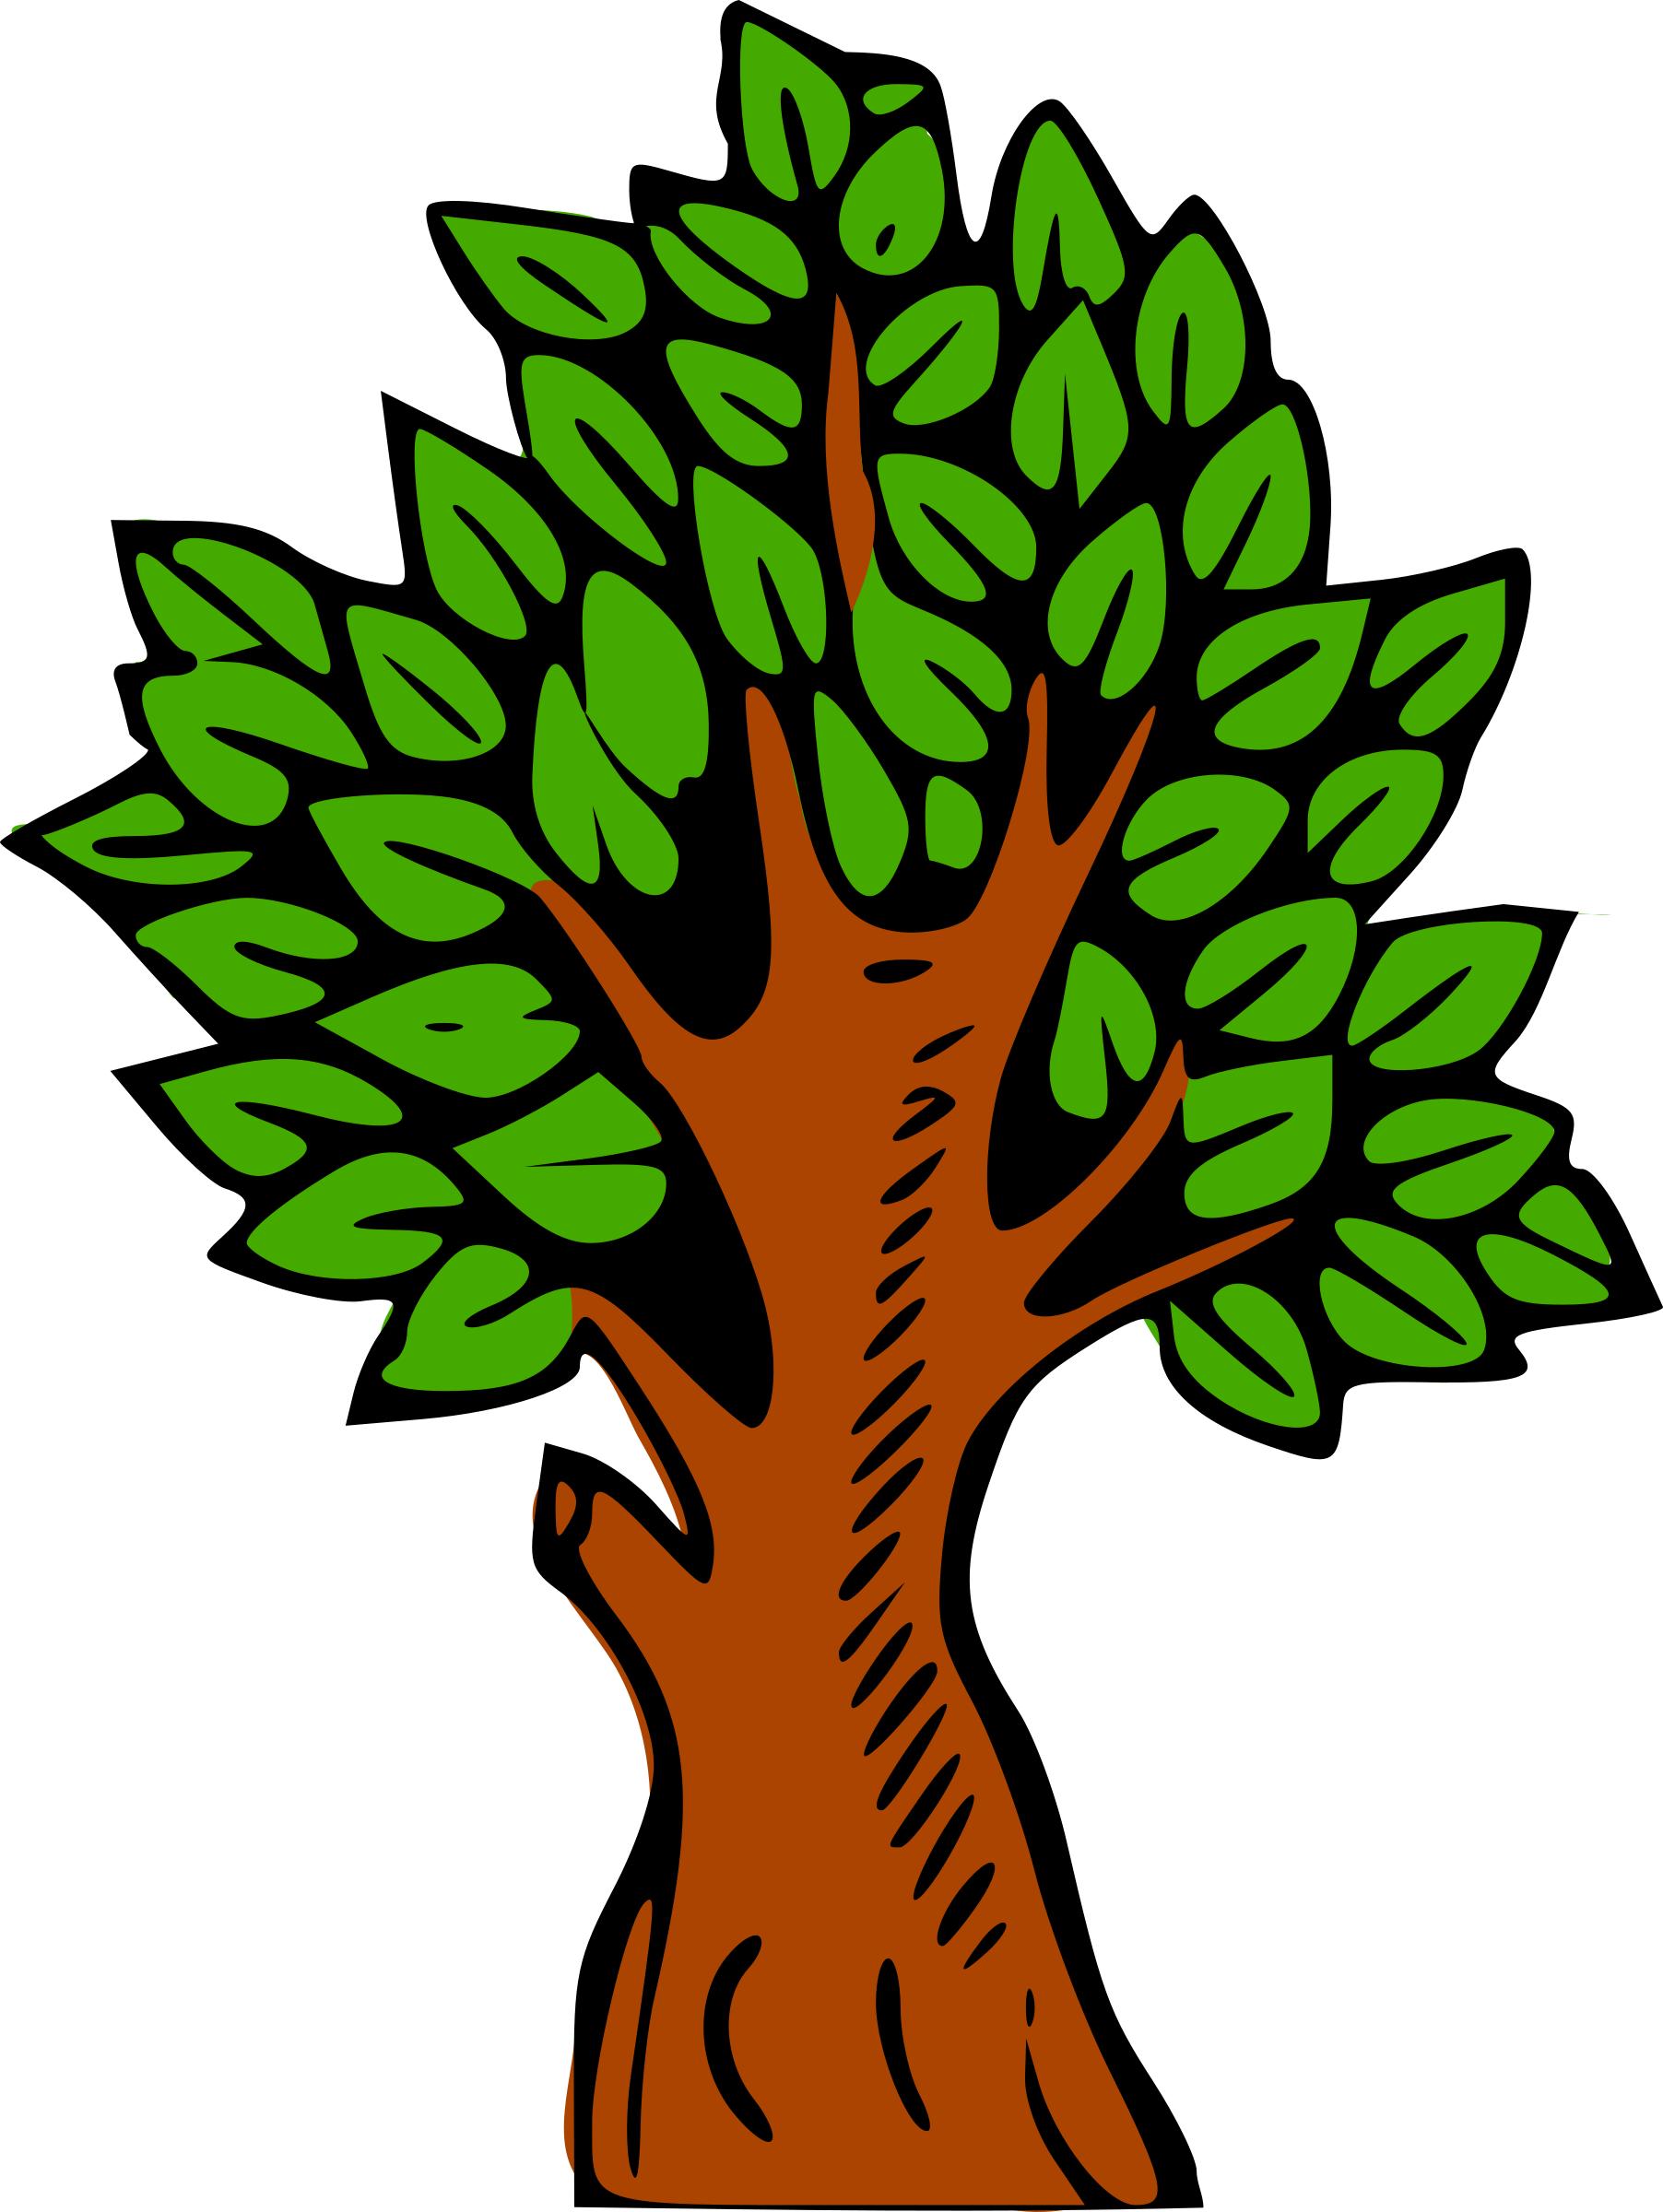 Tree icons